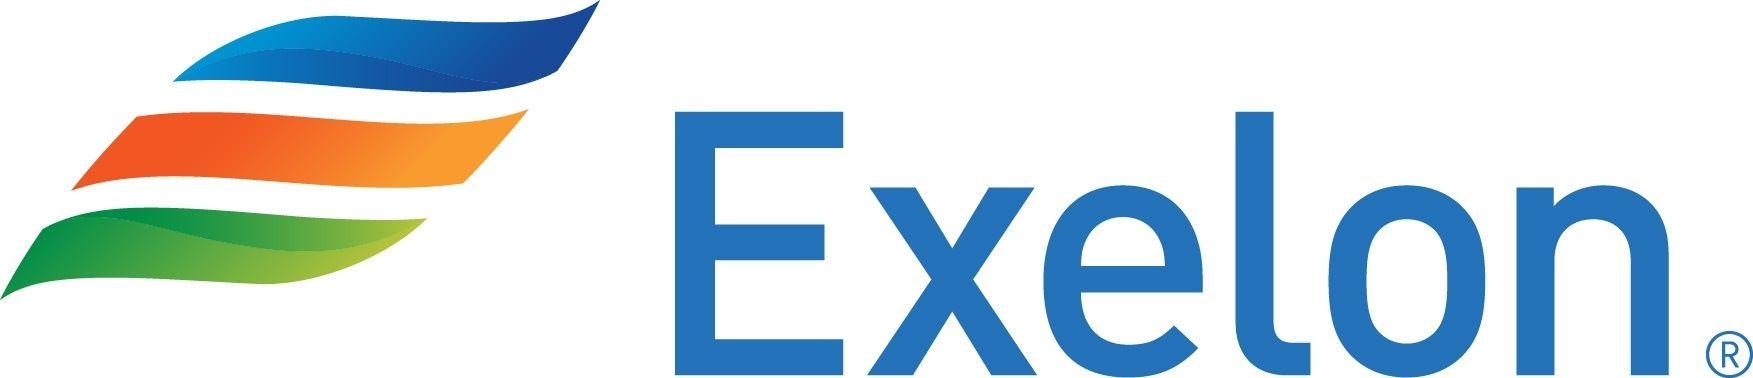 Exelon Energy Logo - Exelon Logos